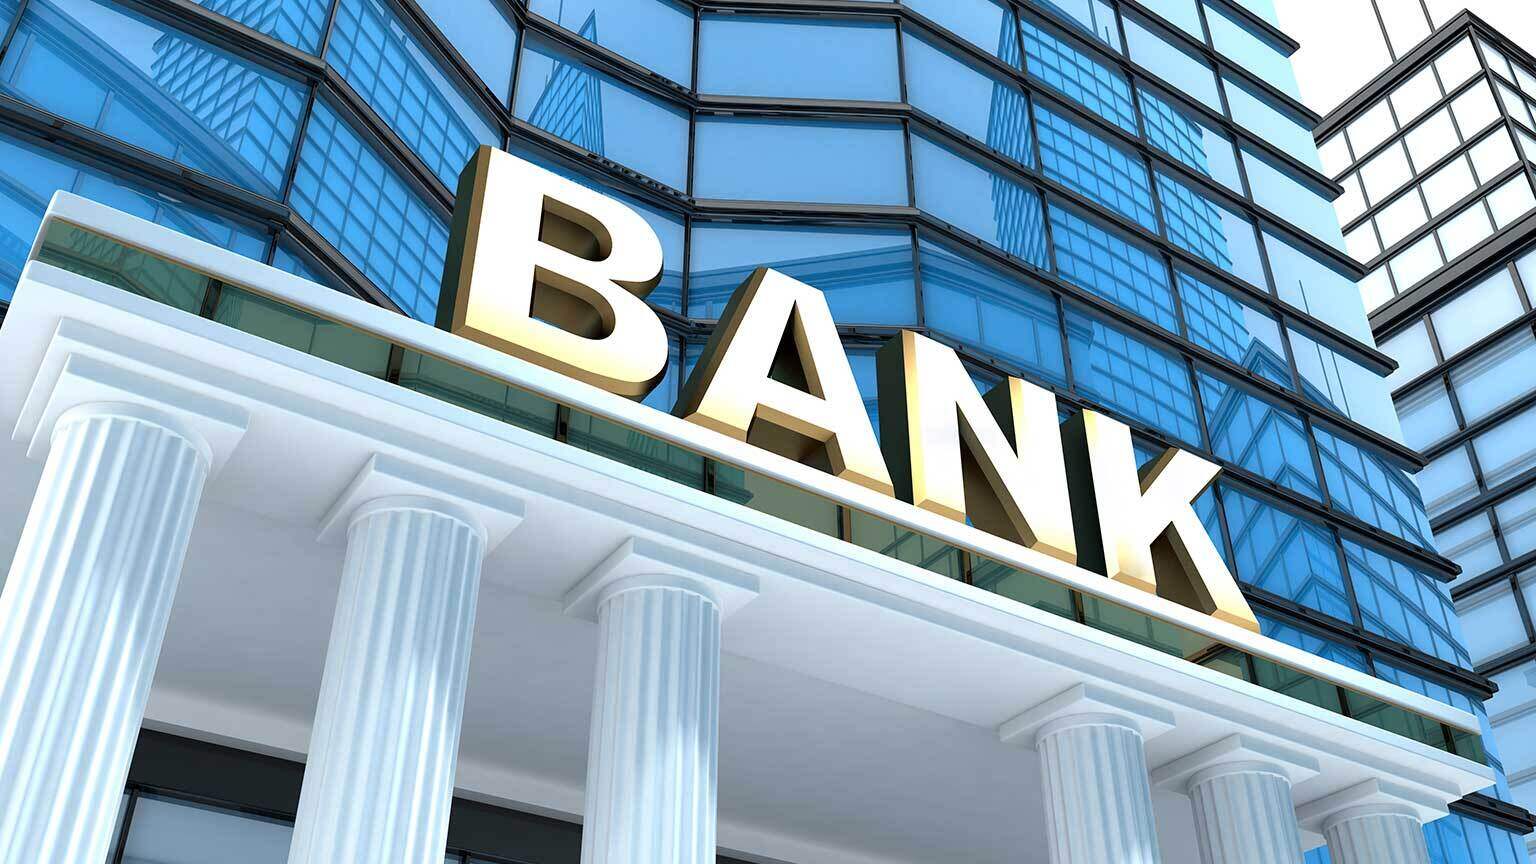 10 cổ phiếu ngân hàng nào đáng giải ngân cuối năm 2022?. Trong báo cáo về ngành ngân hàng mới đây, đây  ...